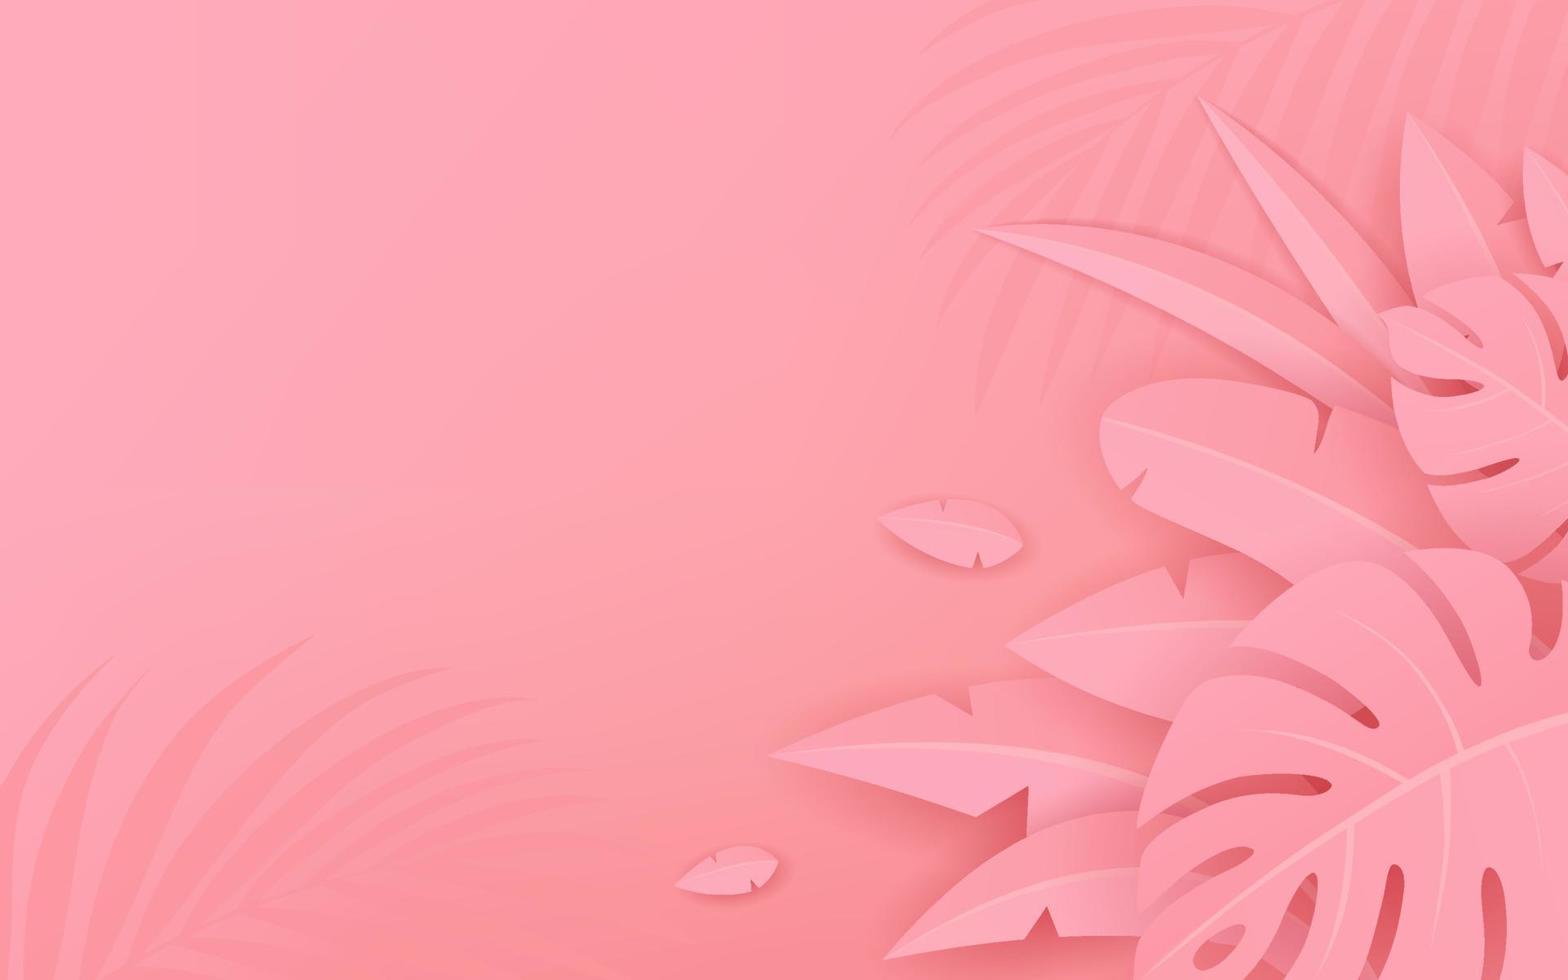 Pink leave paper cut design on pink background, EPS 10 Vector illustration